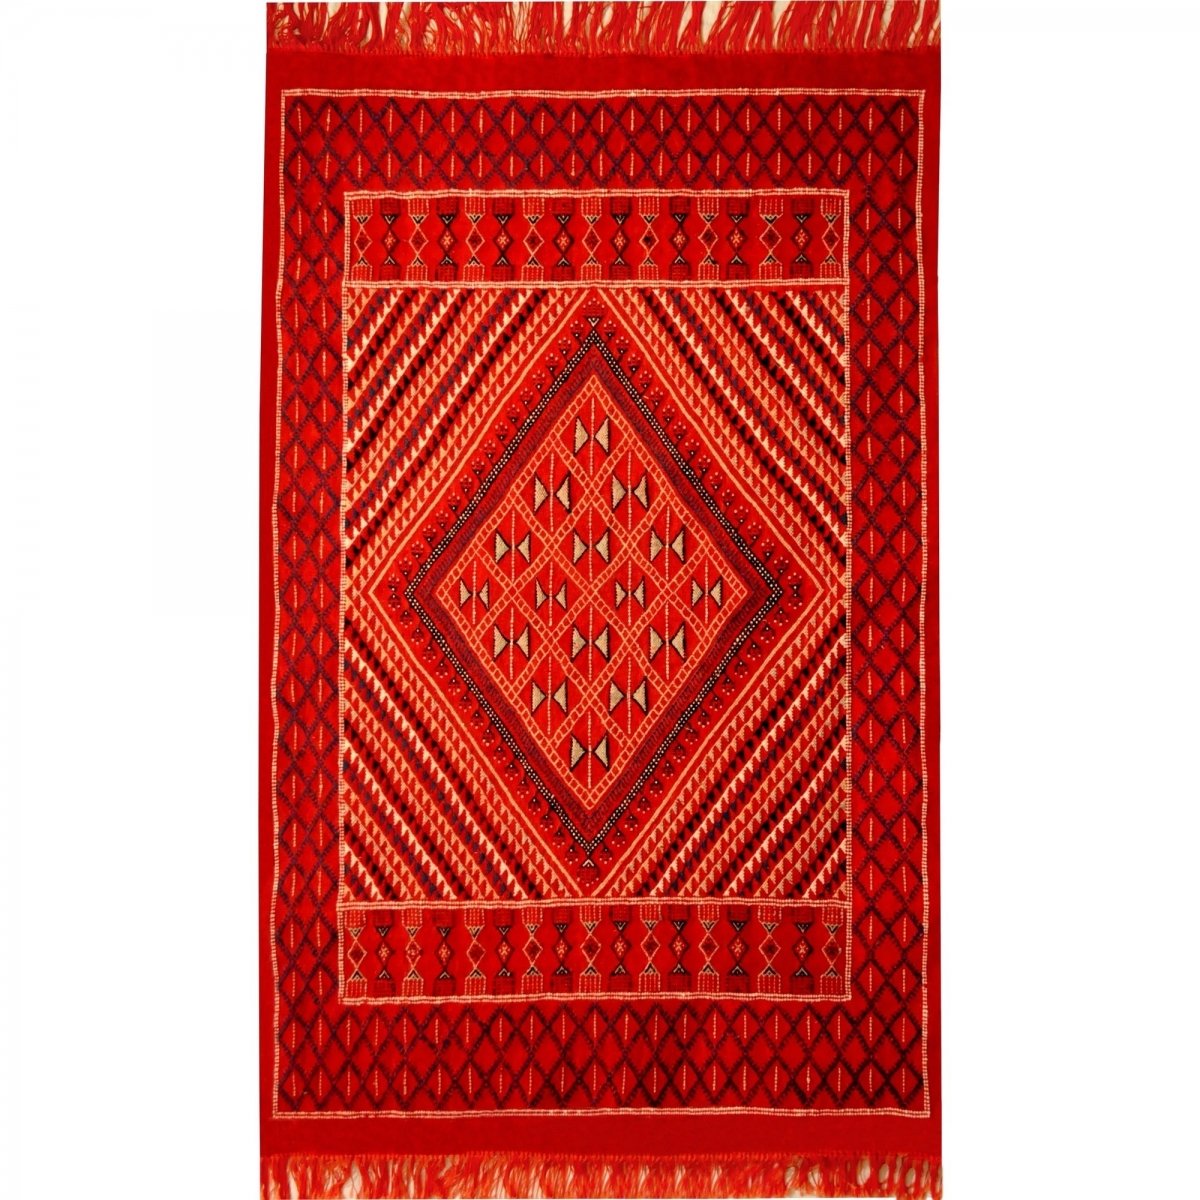 Berber tapijt Tapijt Margoum Kantoui 120x180 Rood (Handgeweven, Wol, Tunesië) Tunesisch Margoum Tapijt uit de stad Kairouan. Rec